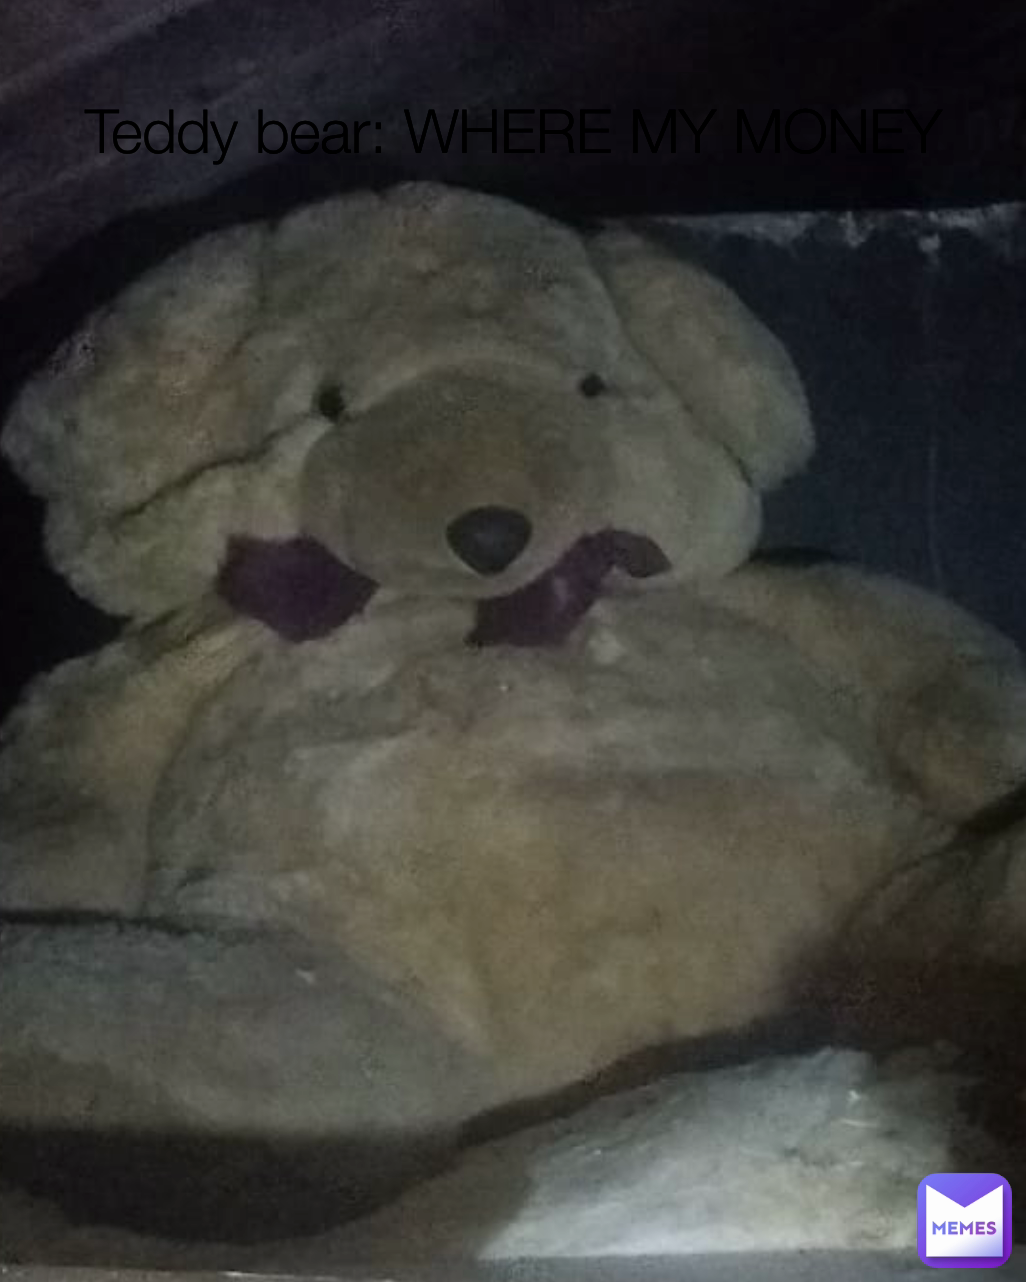 Teddy bear: WHERE MY MONEY